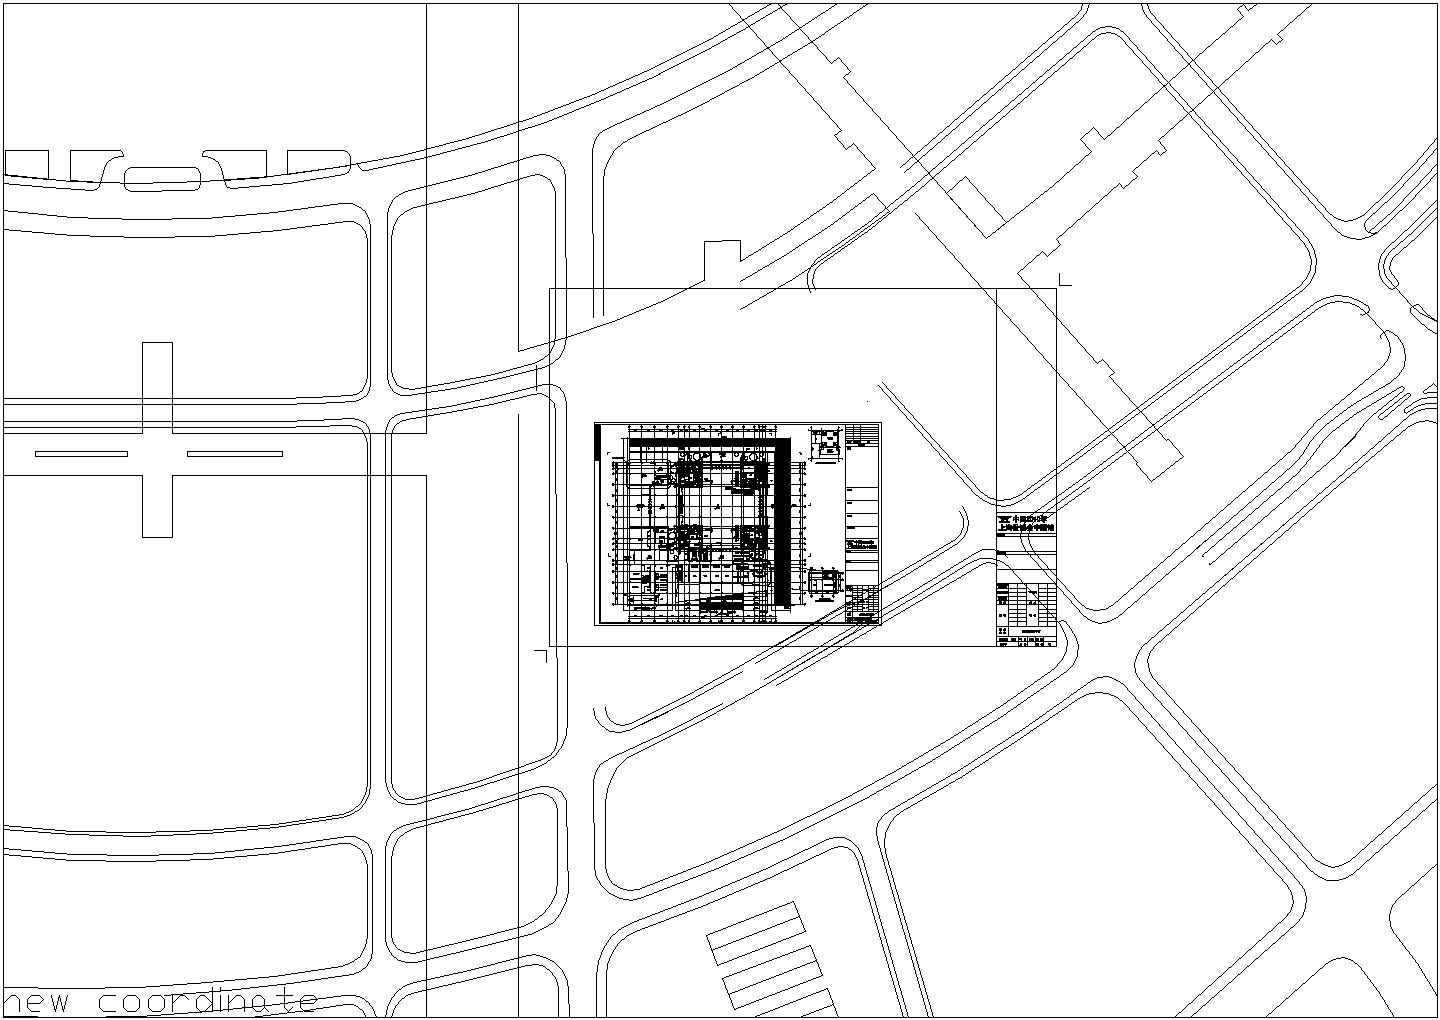 华谊博物馆cad图案设计平面图(地面)